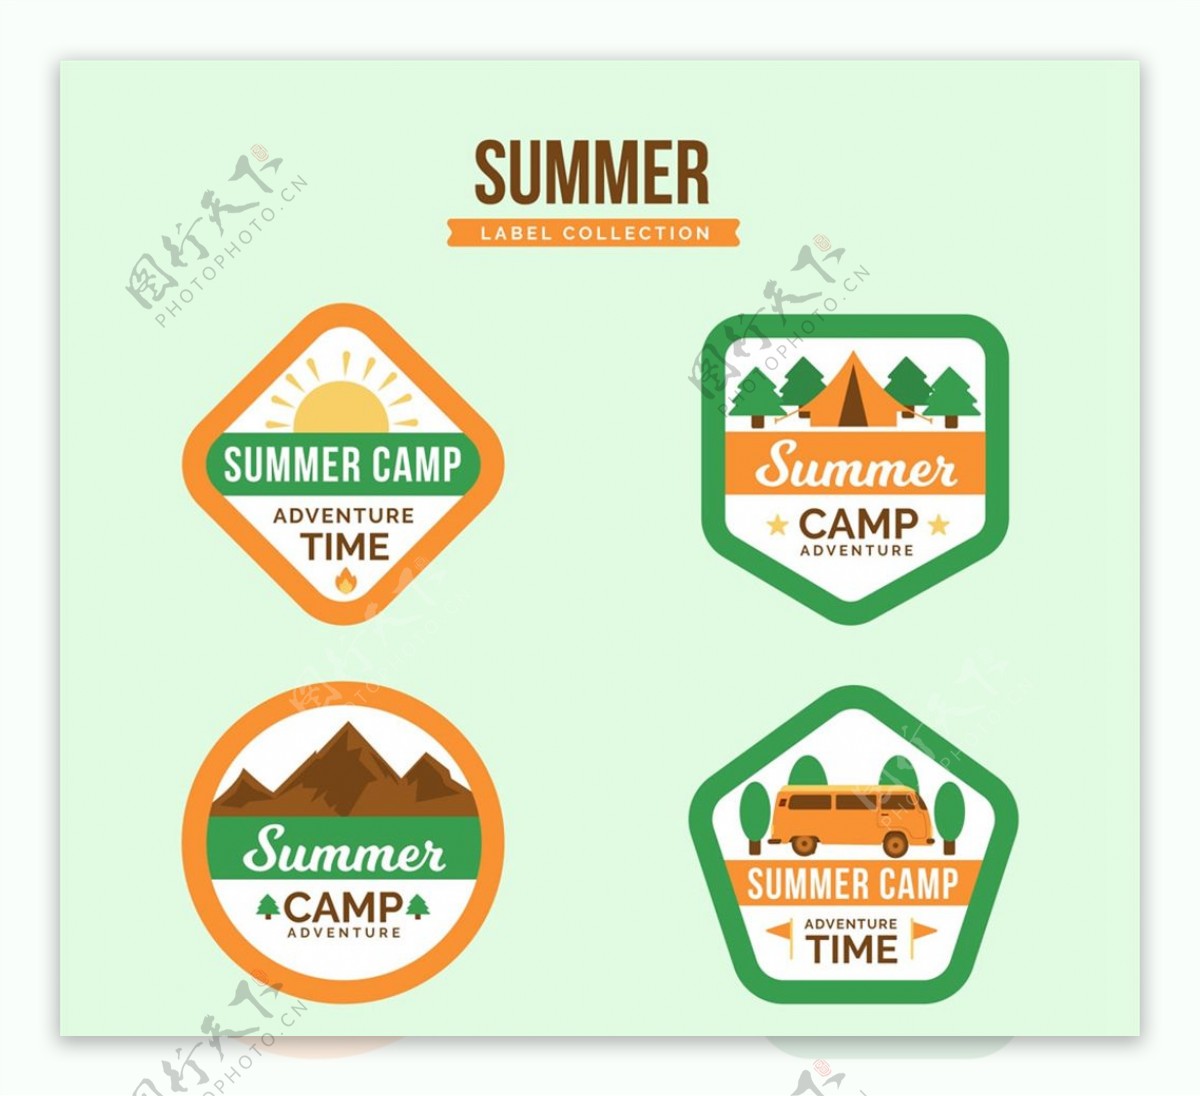 夏季野营标签矢量图片